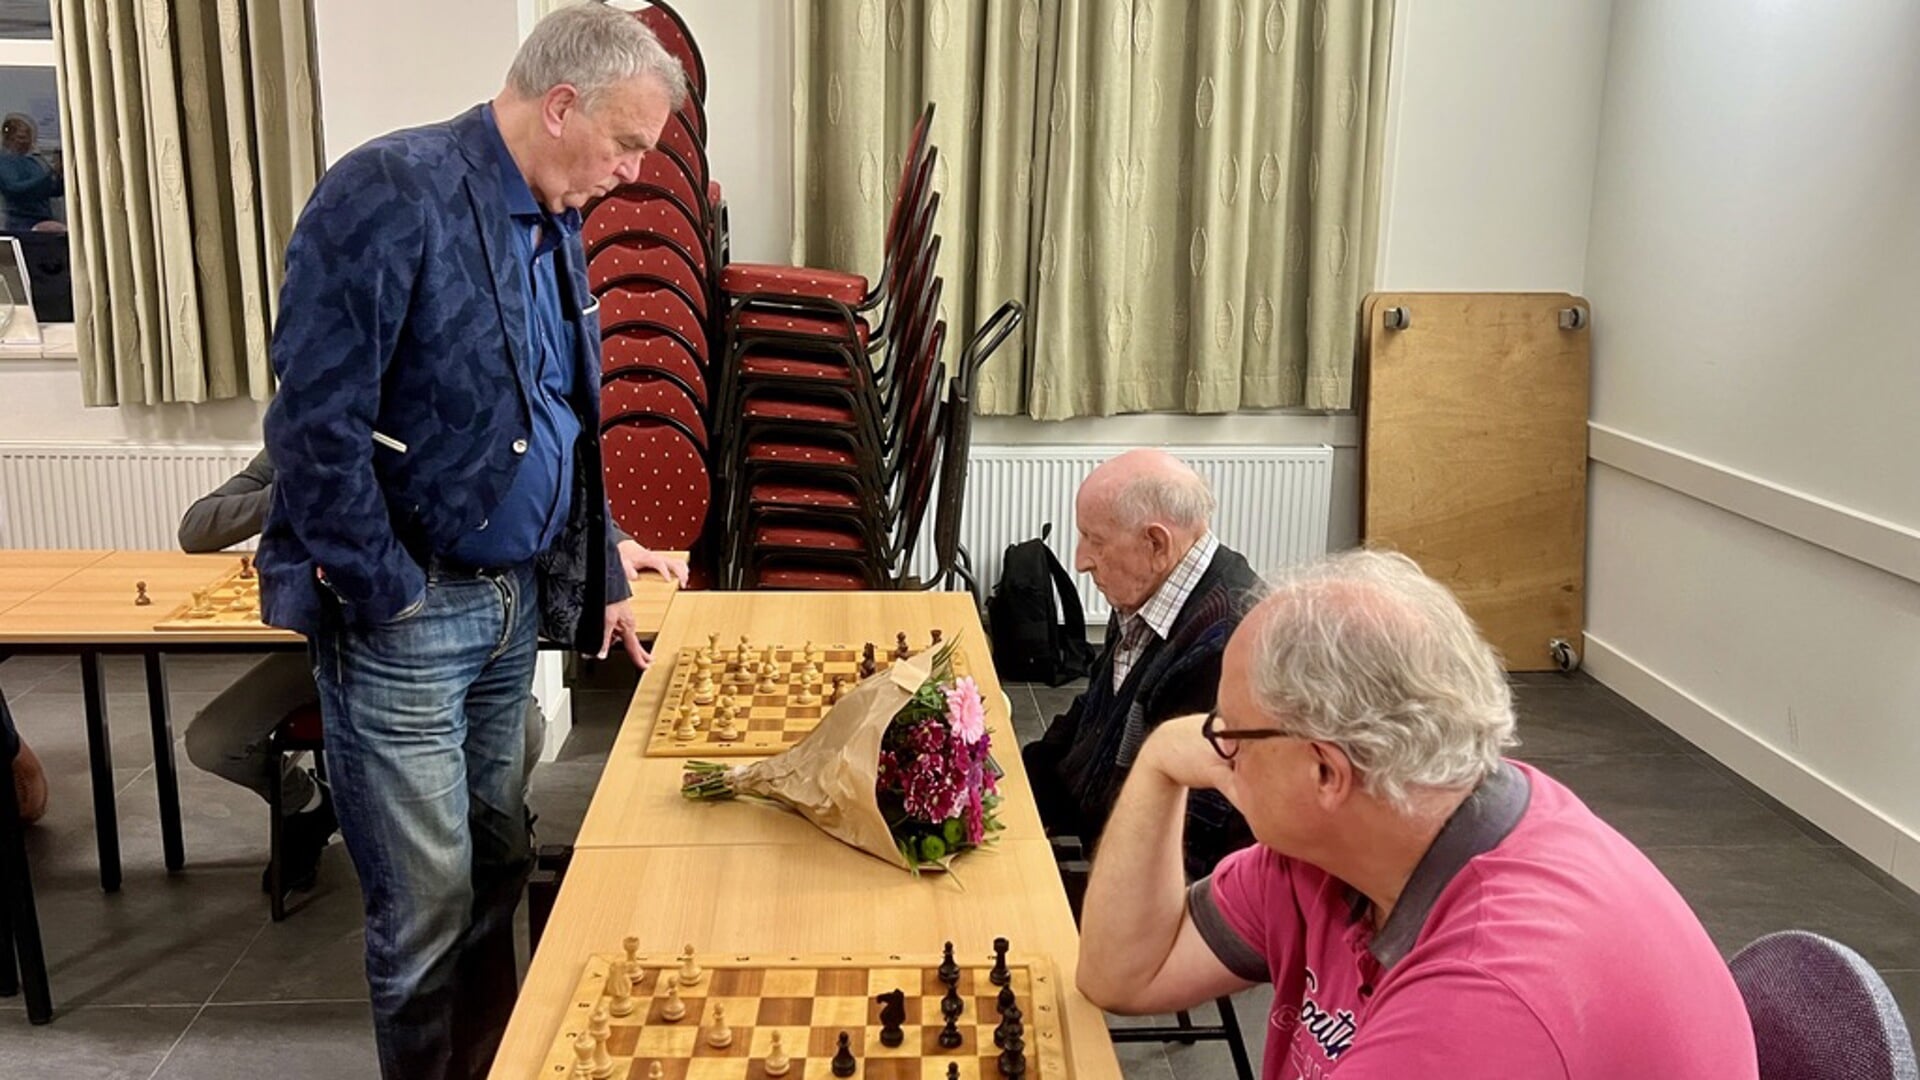 Schaakmeester Hans Böhm, tijdens schaaksimultaan, aan zet tegen Wim Klijn.